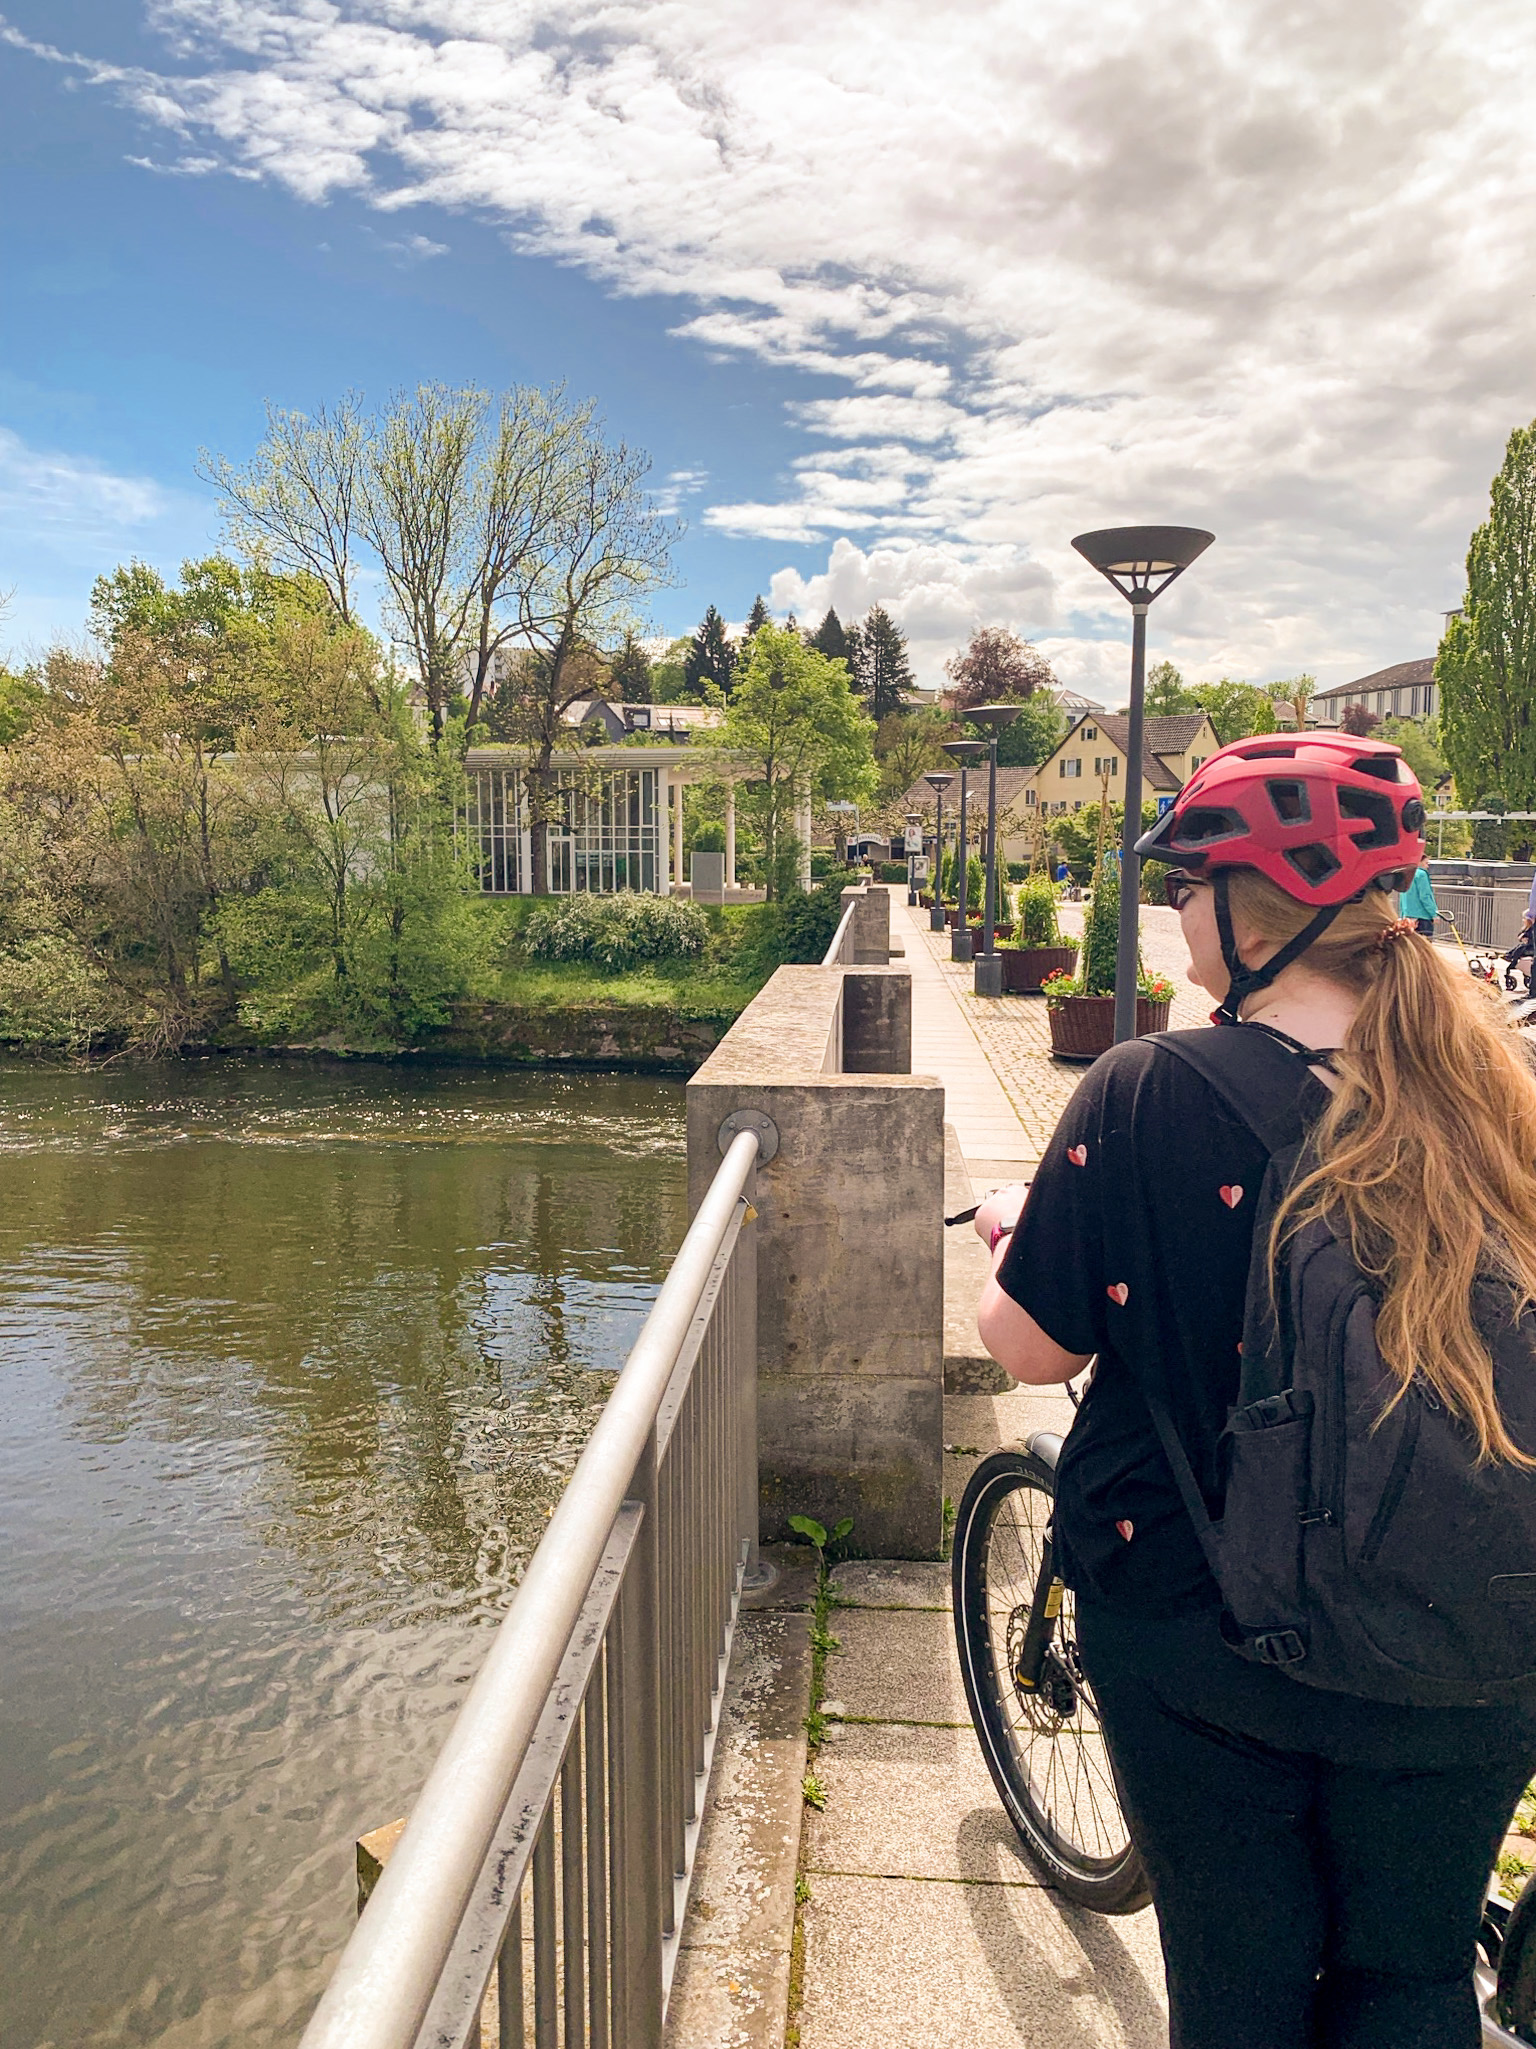 Fahrradtour Frau mit langen blonden Haaren von hinten und rotem Helm, auf einer Brücke stehend in die Ferne sehend, blauer Himmel mit wenigen Wolken, Bietigheim-Bissingen